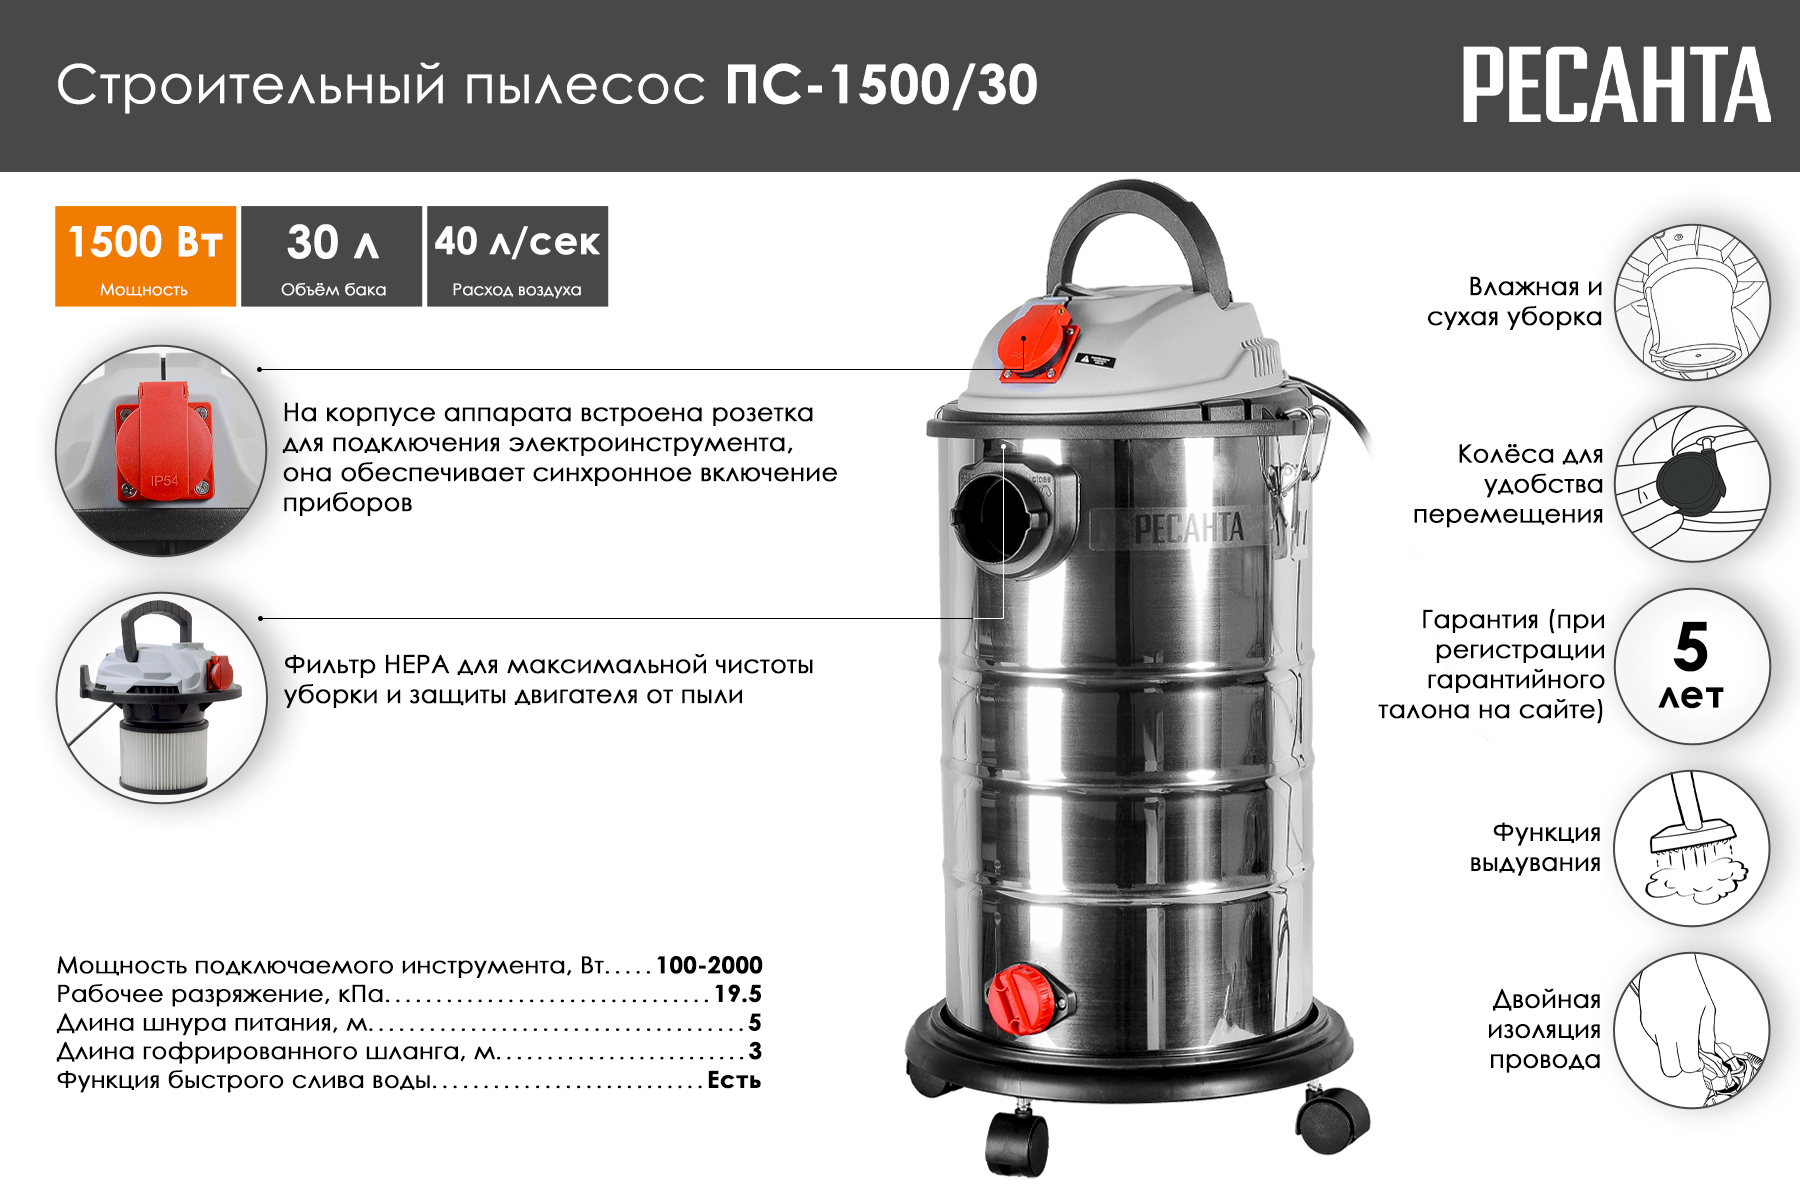 Пылесос строительный Ресанта ПС-1500/30